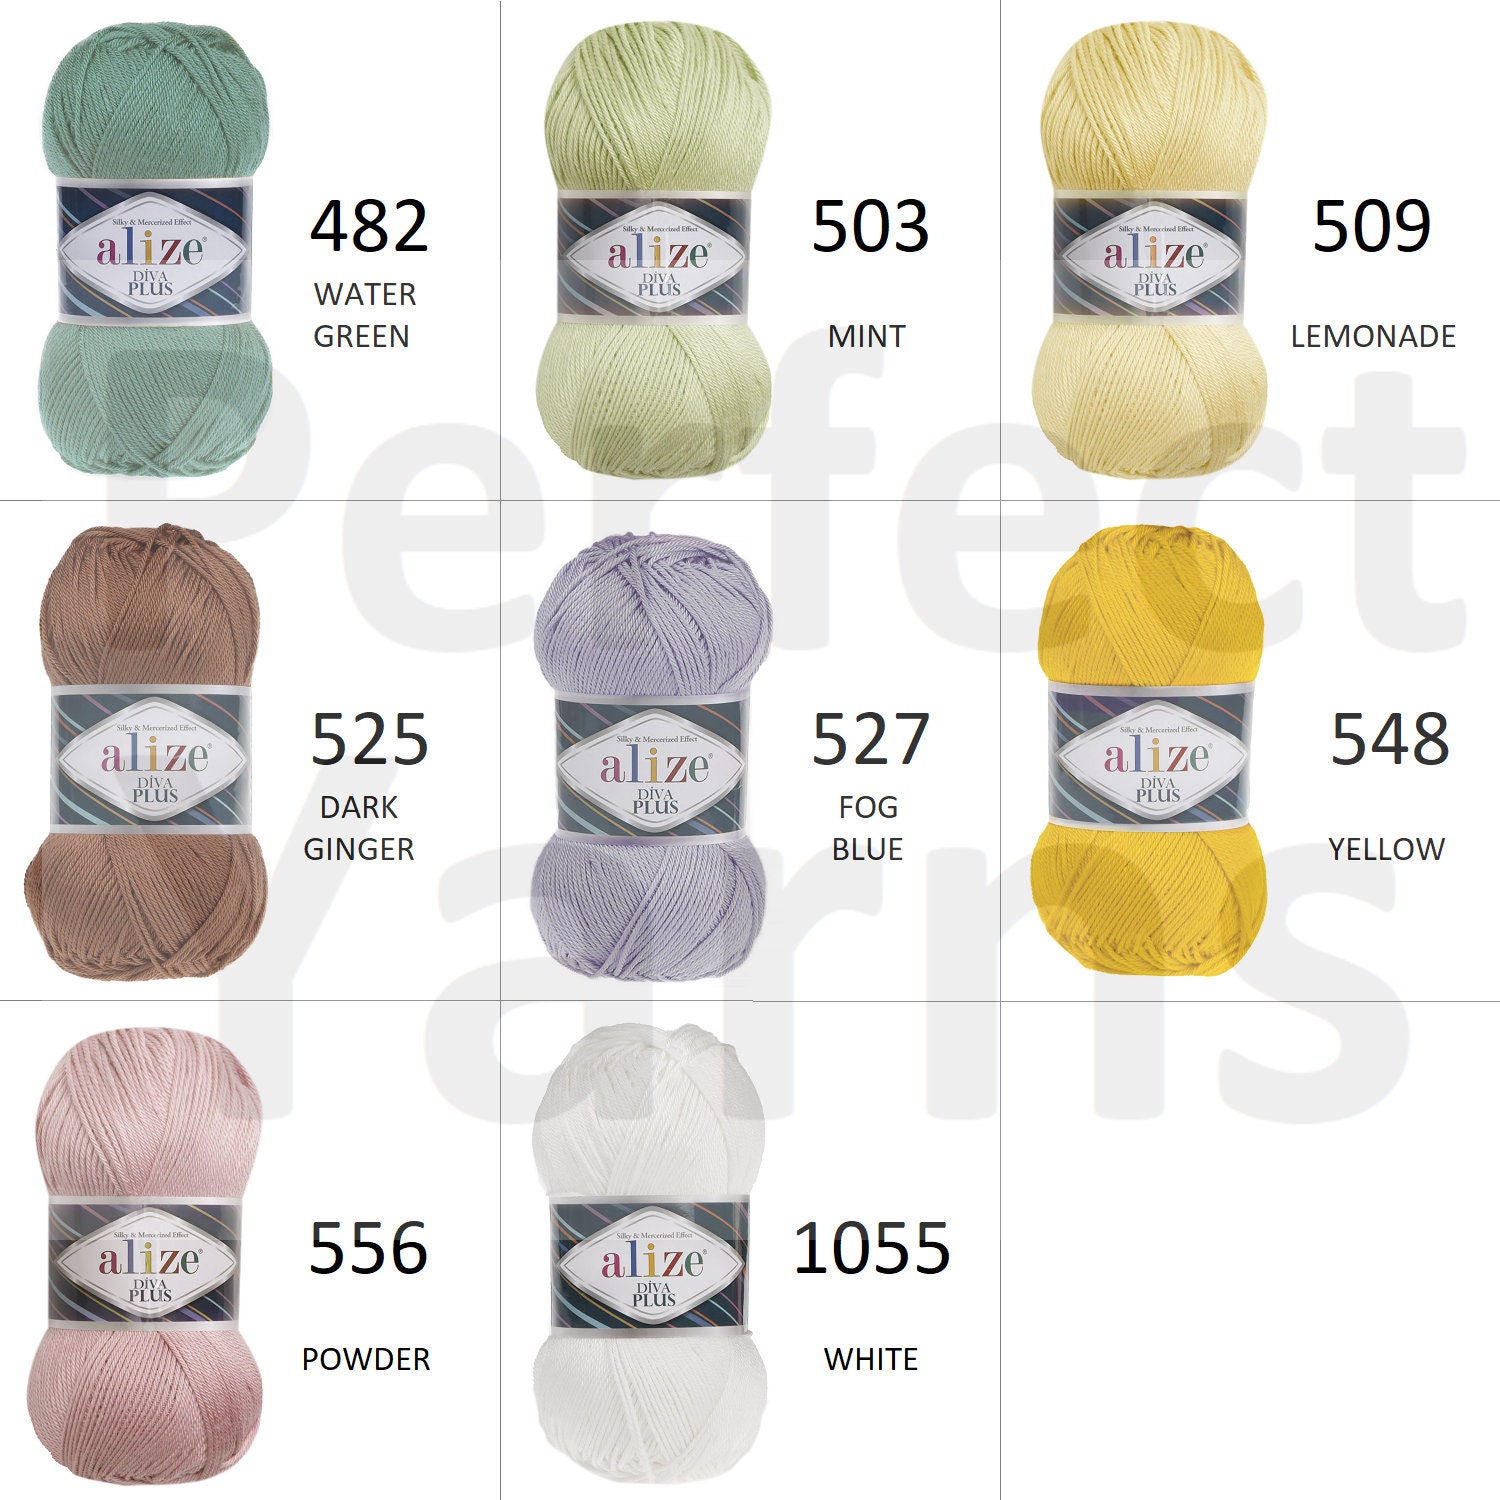 Alize Diva plus yarn 100% acrylic 100 grams 220 meters | Etsy